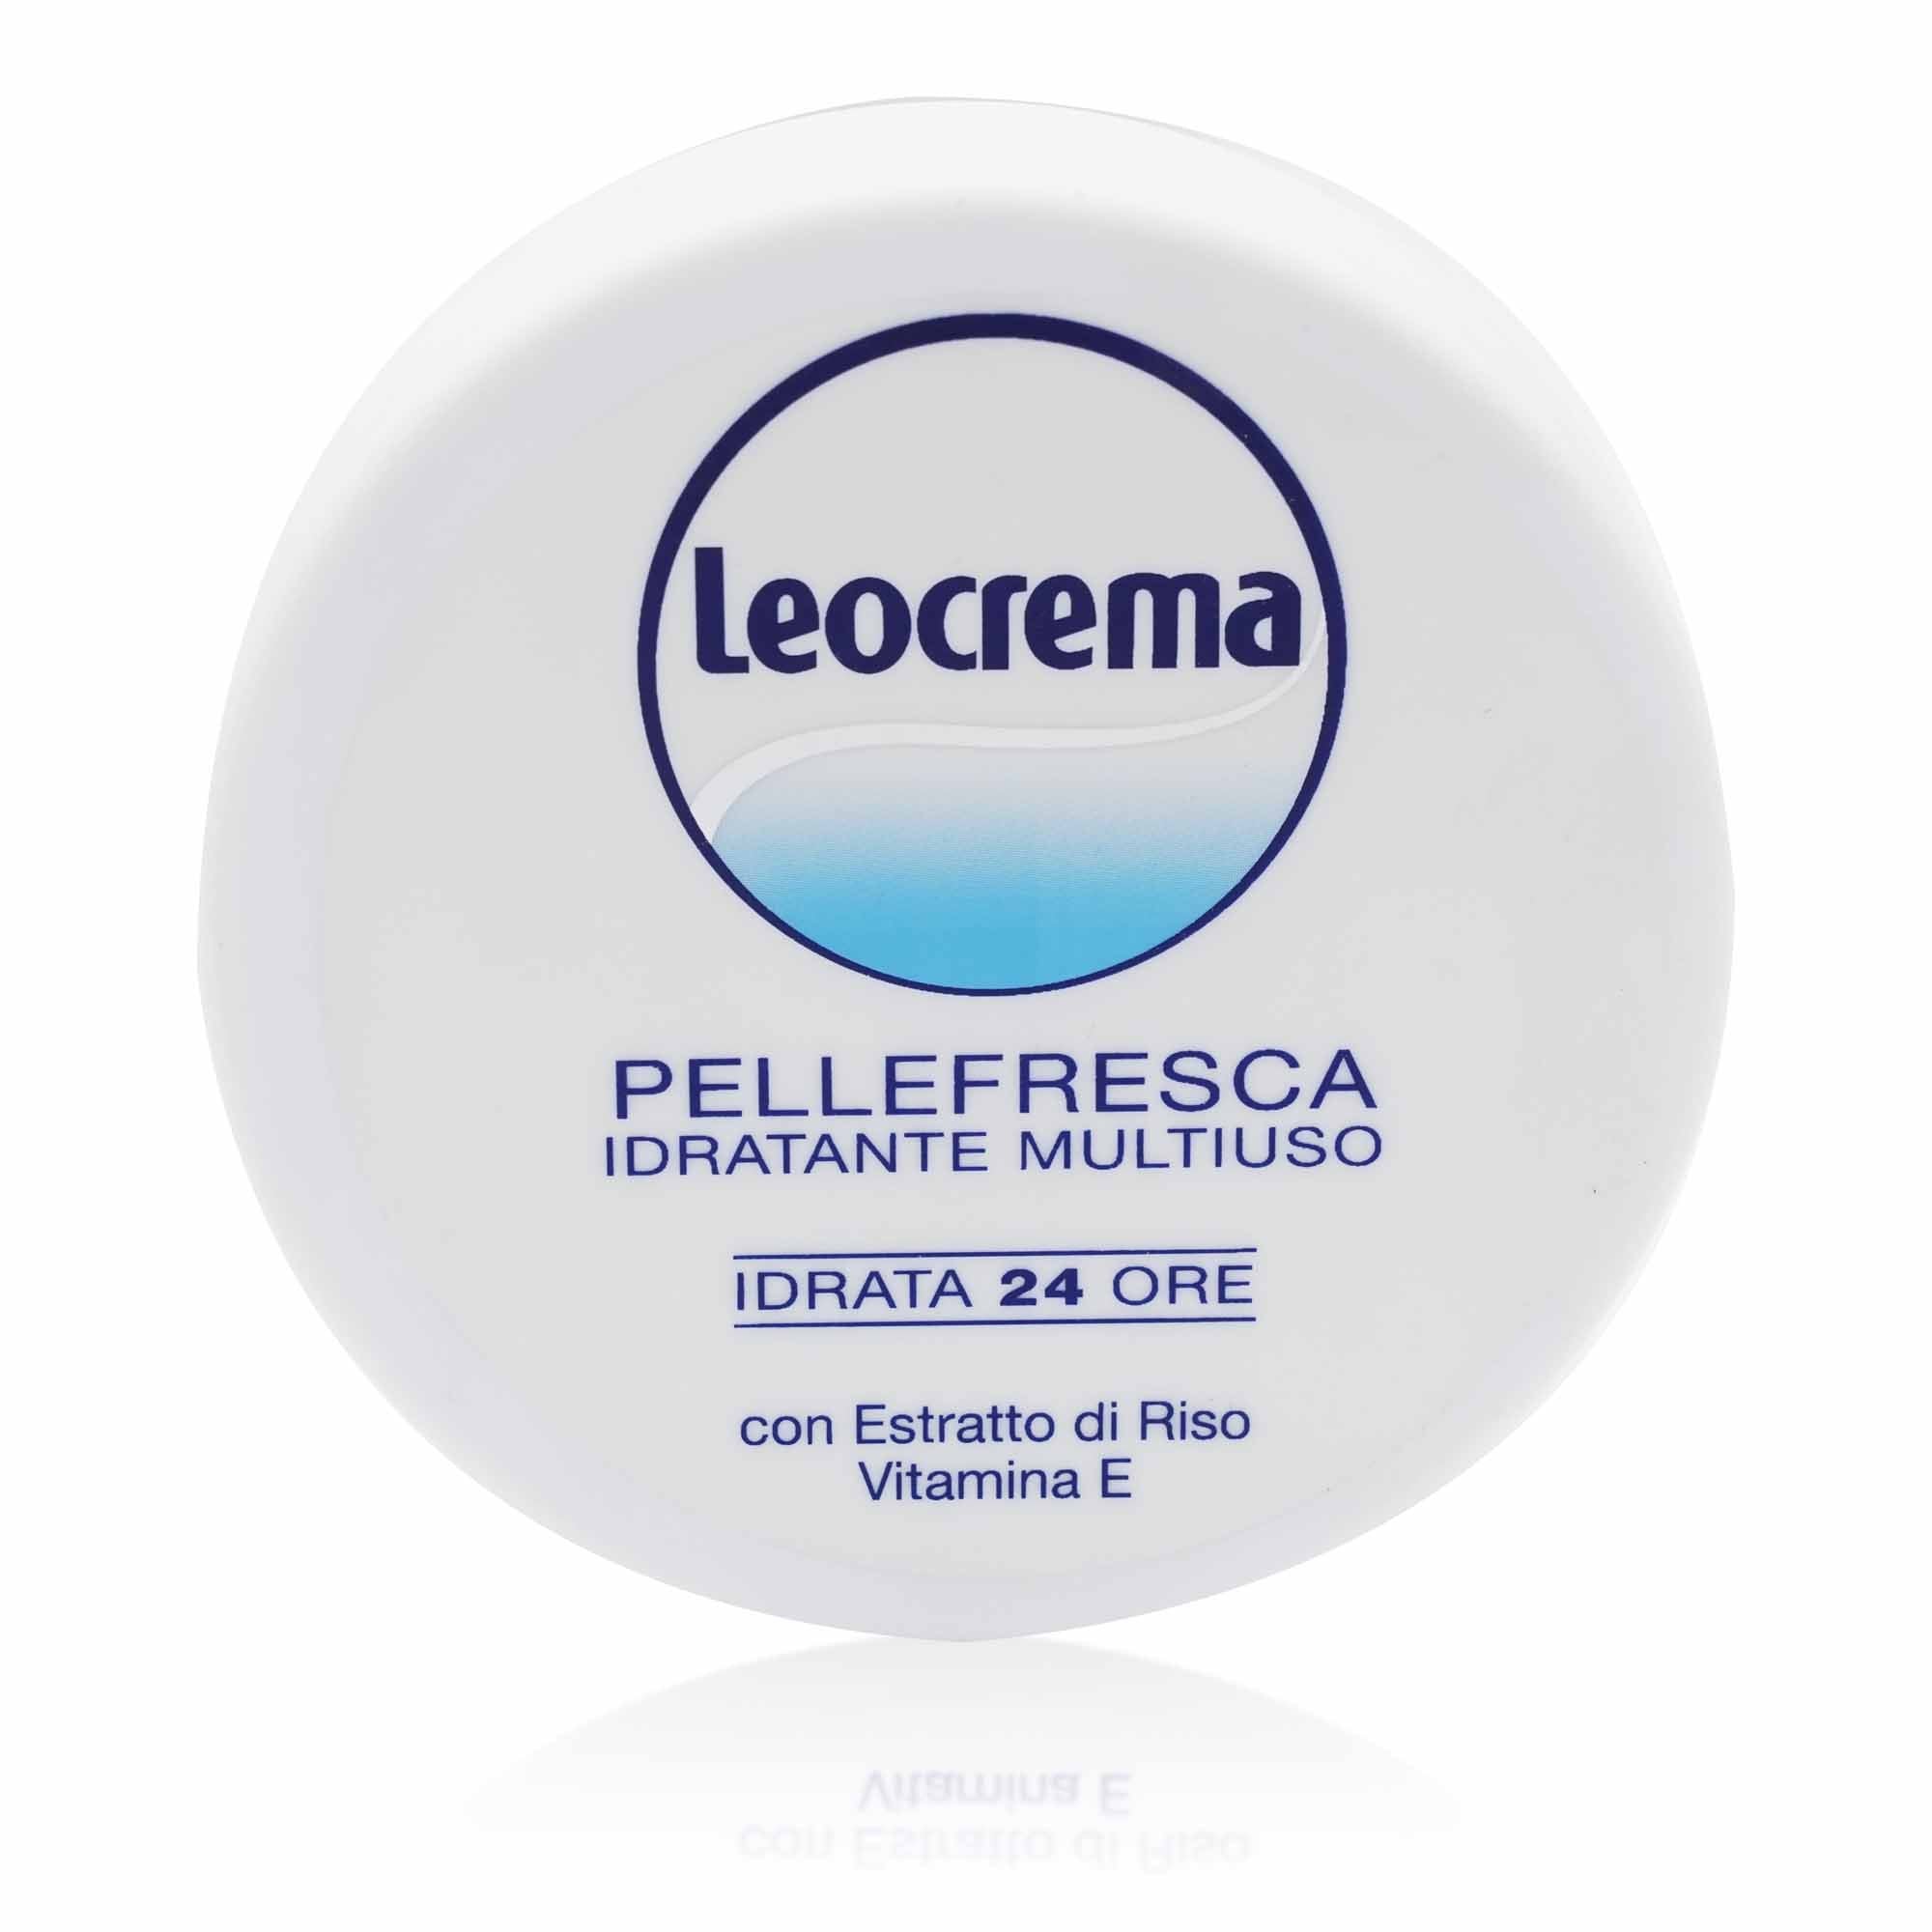 LEOCREMA Crema corpo Pellefresca – Körpercreme "Pellefresca" - 0,150l